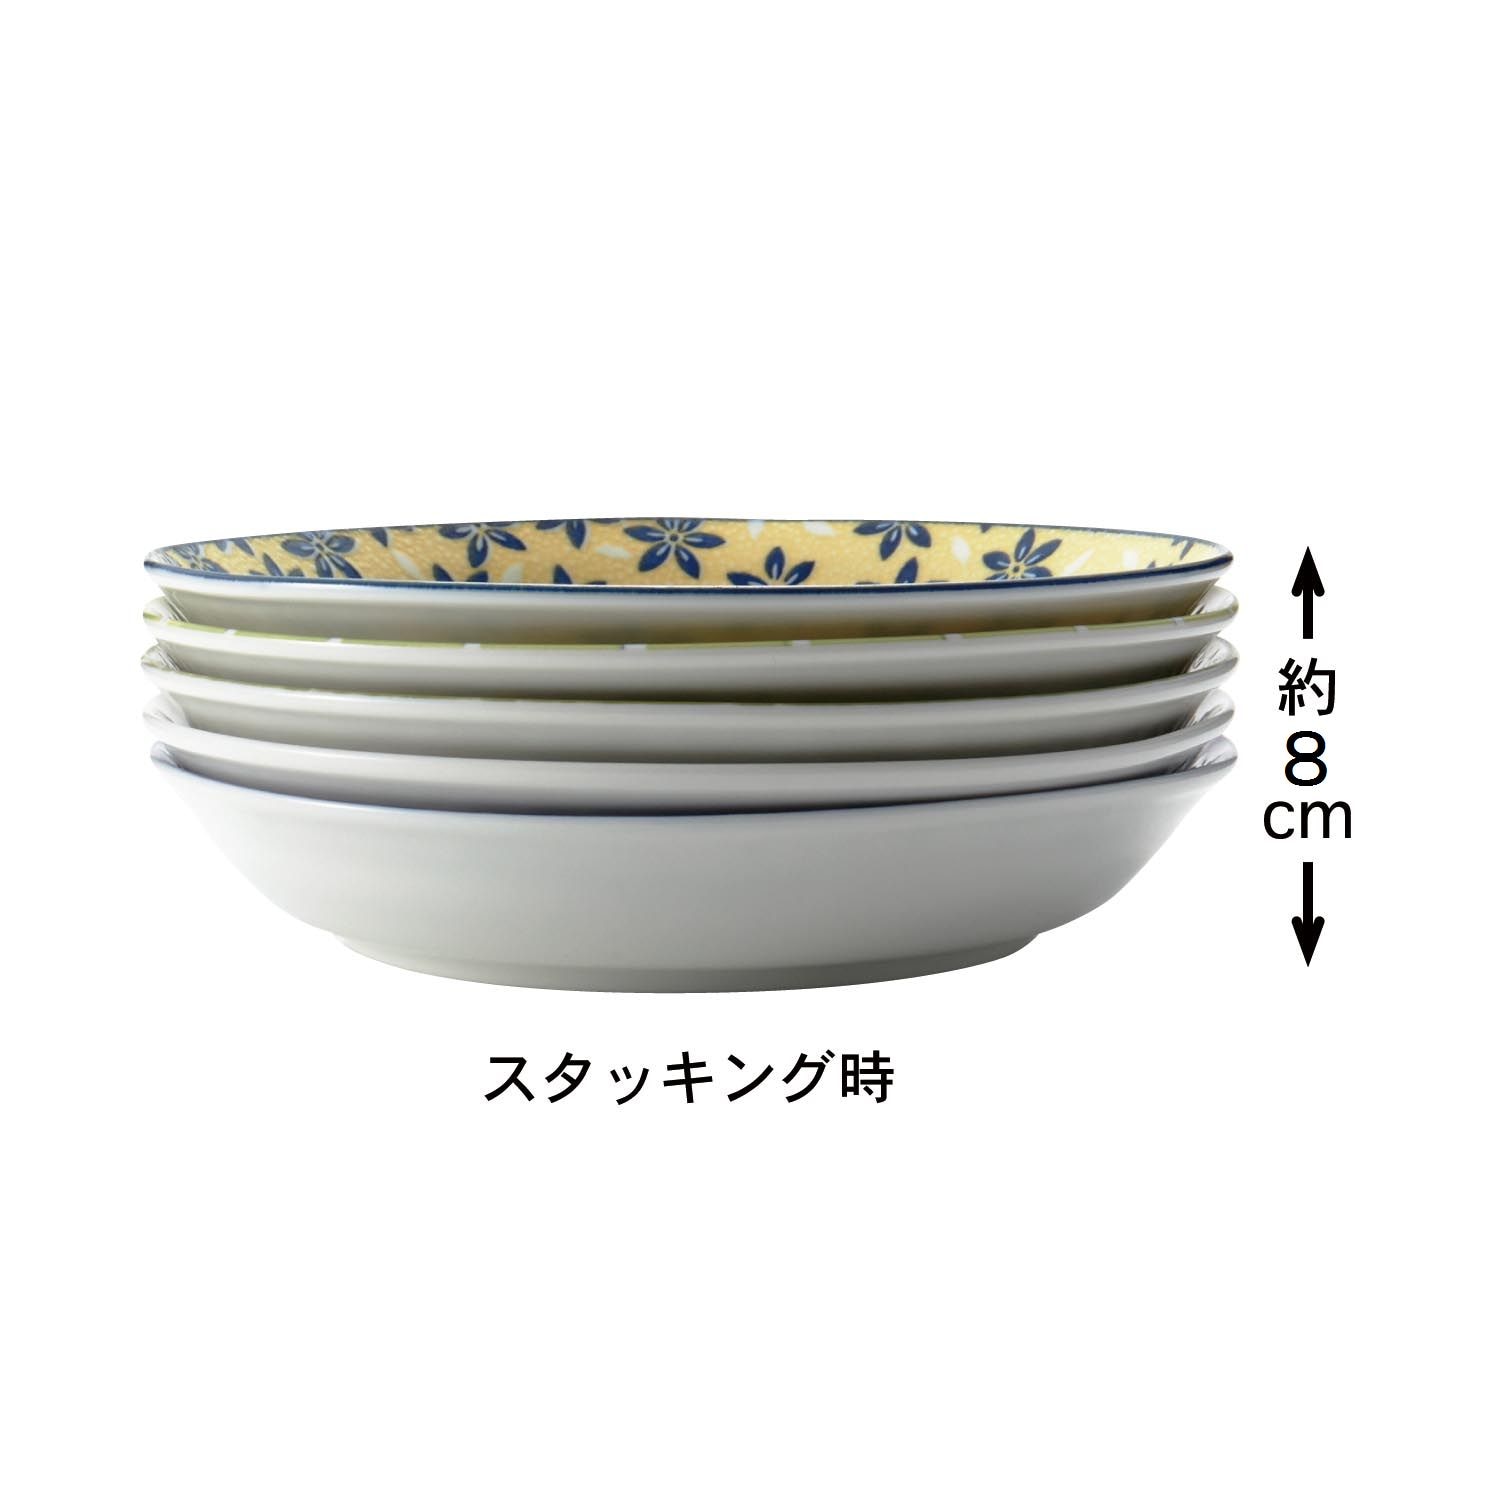 ポタリーフィールド スープカレー皿セット (7-1804)